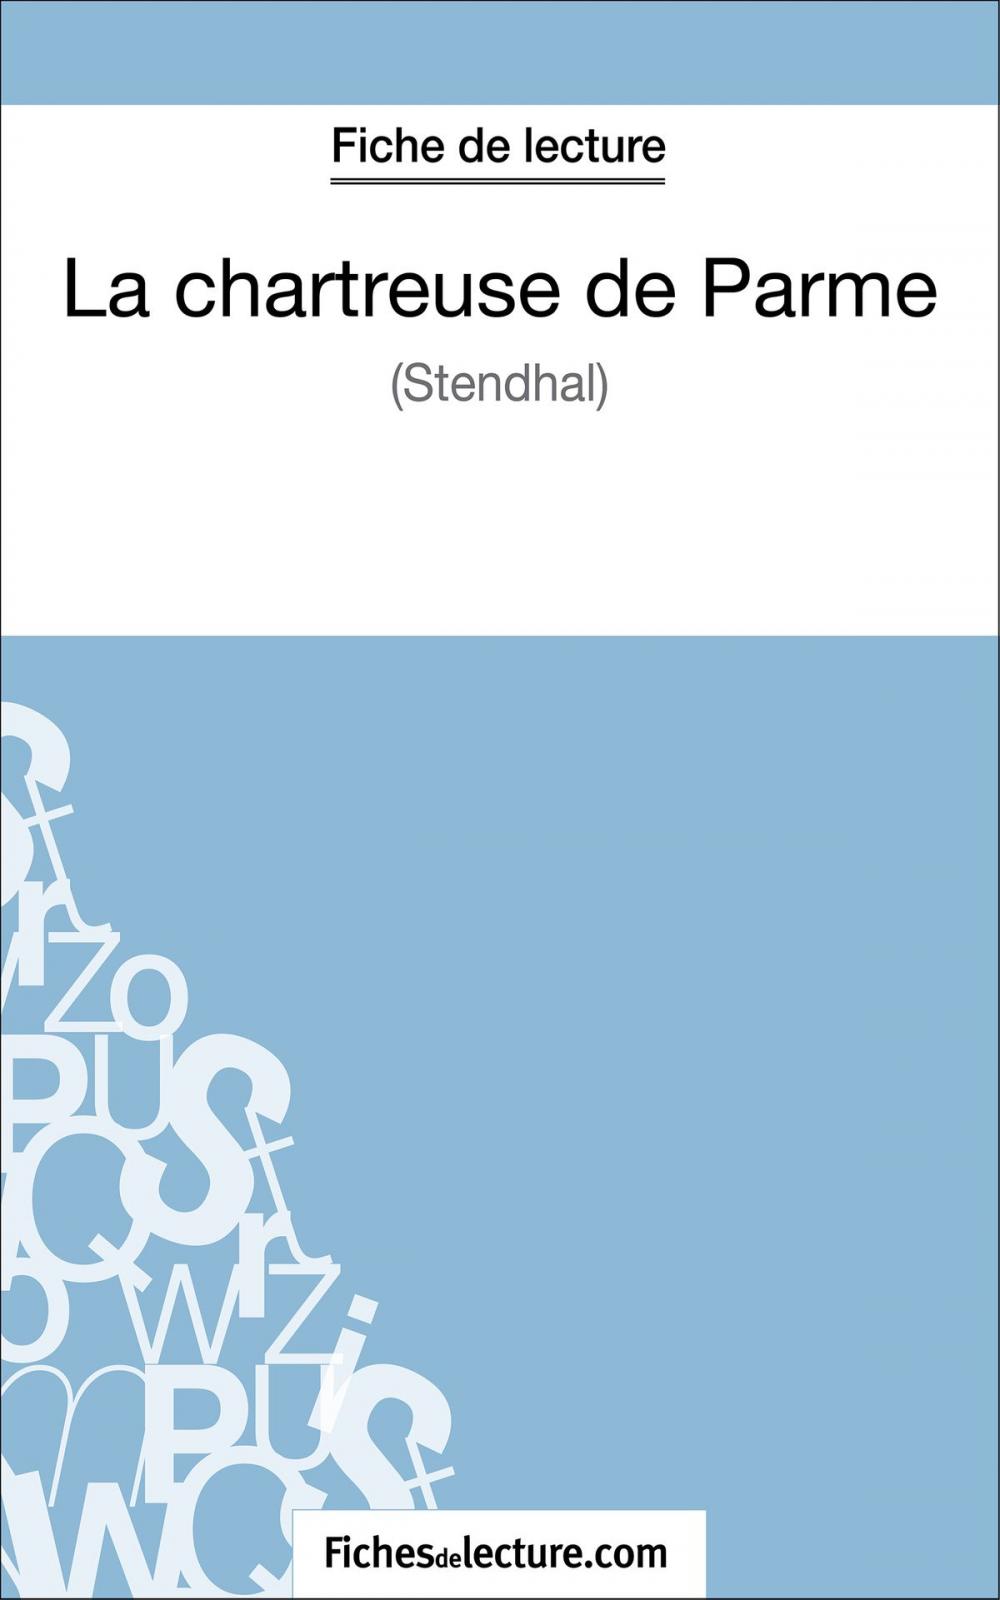 Big bigCover of La chartreuse de Parme de Stendhal (Fiche de lecture)